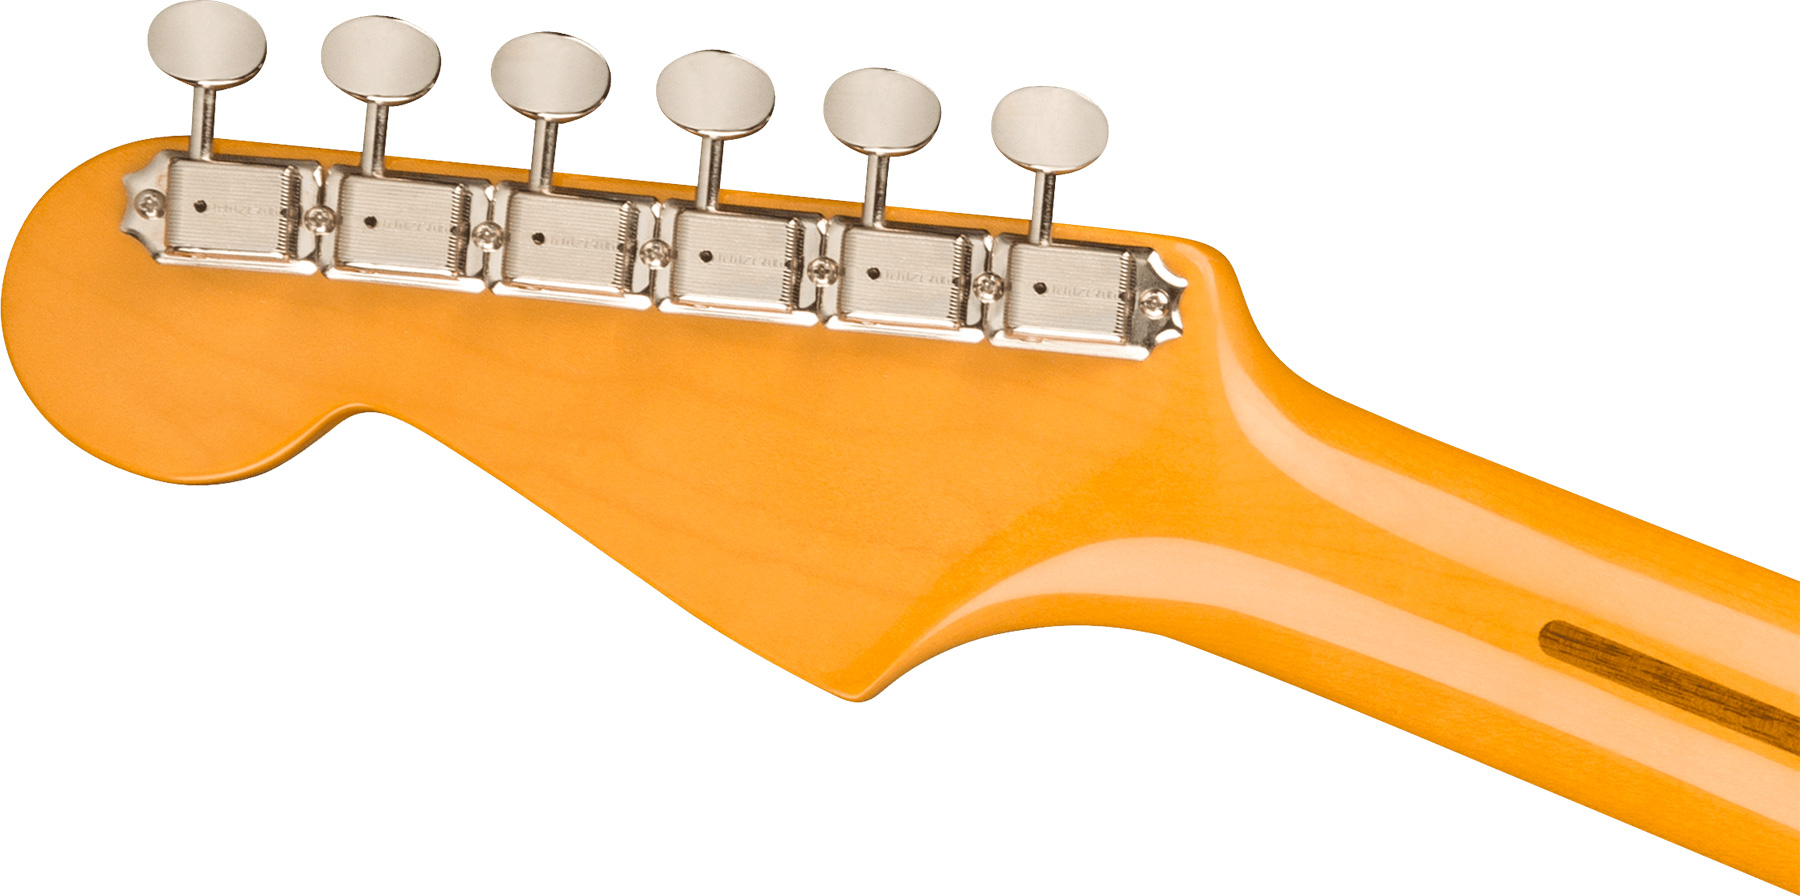 Fender Strat 1957 American Vintage Ii Usa 3s Trem Mn - 2-color Sunburst - Guitarra eléctrica con forma de str. - Variation 3